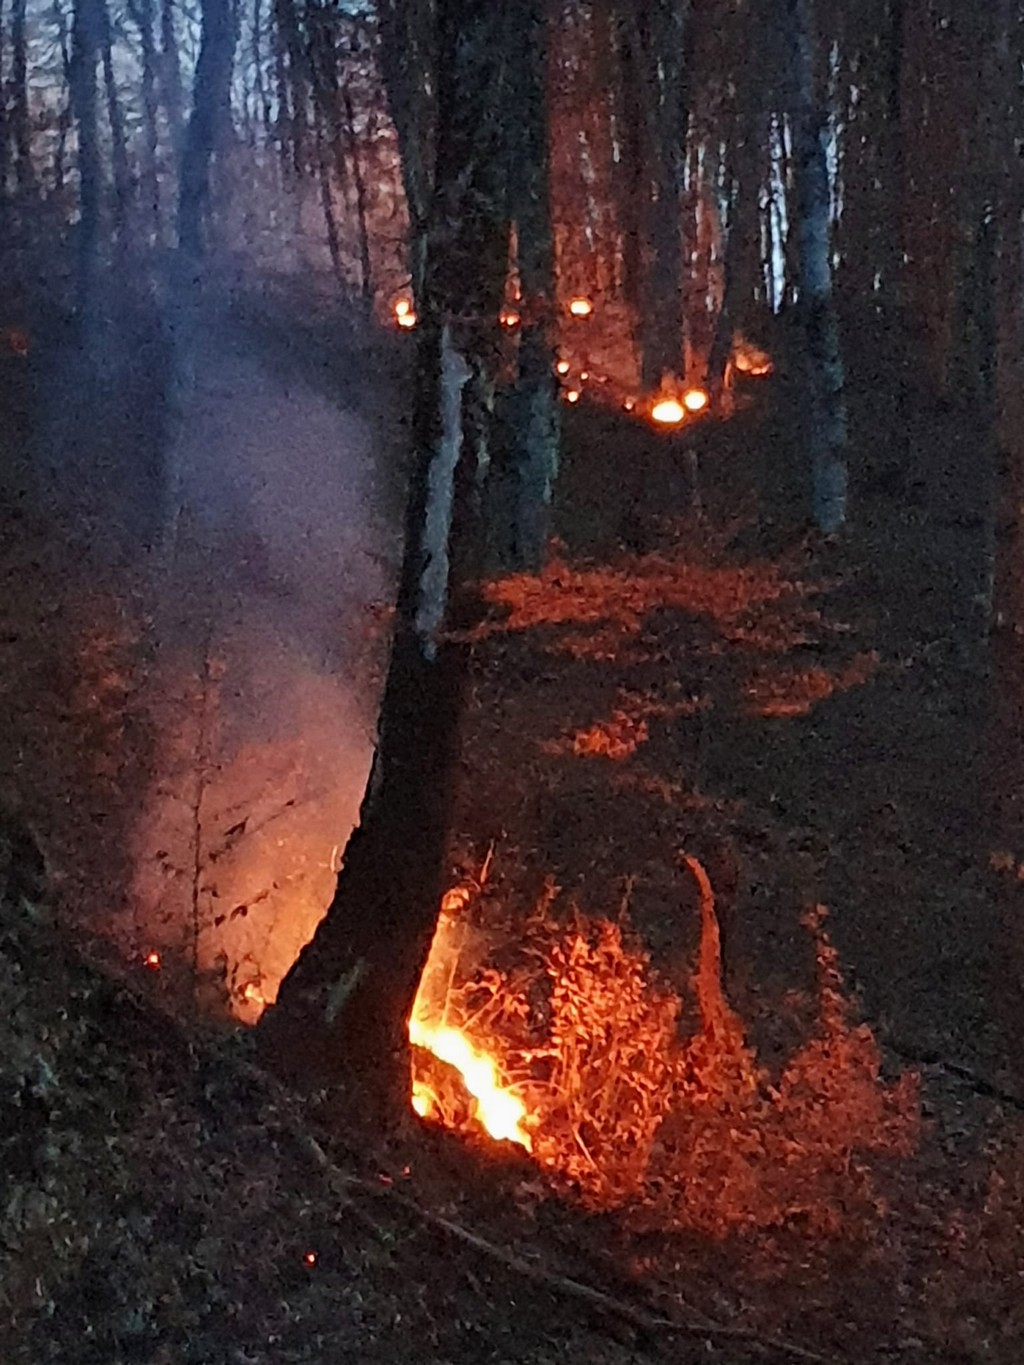 Hrvatske šume ulažu oko 16 milijuna eura u zaštitu šuma od požara